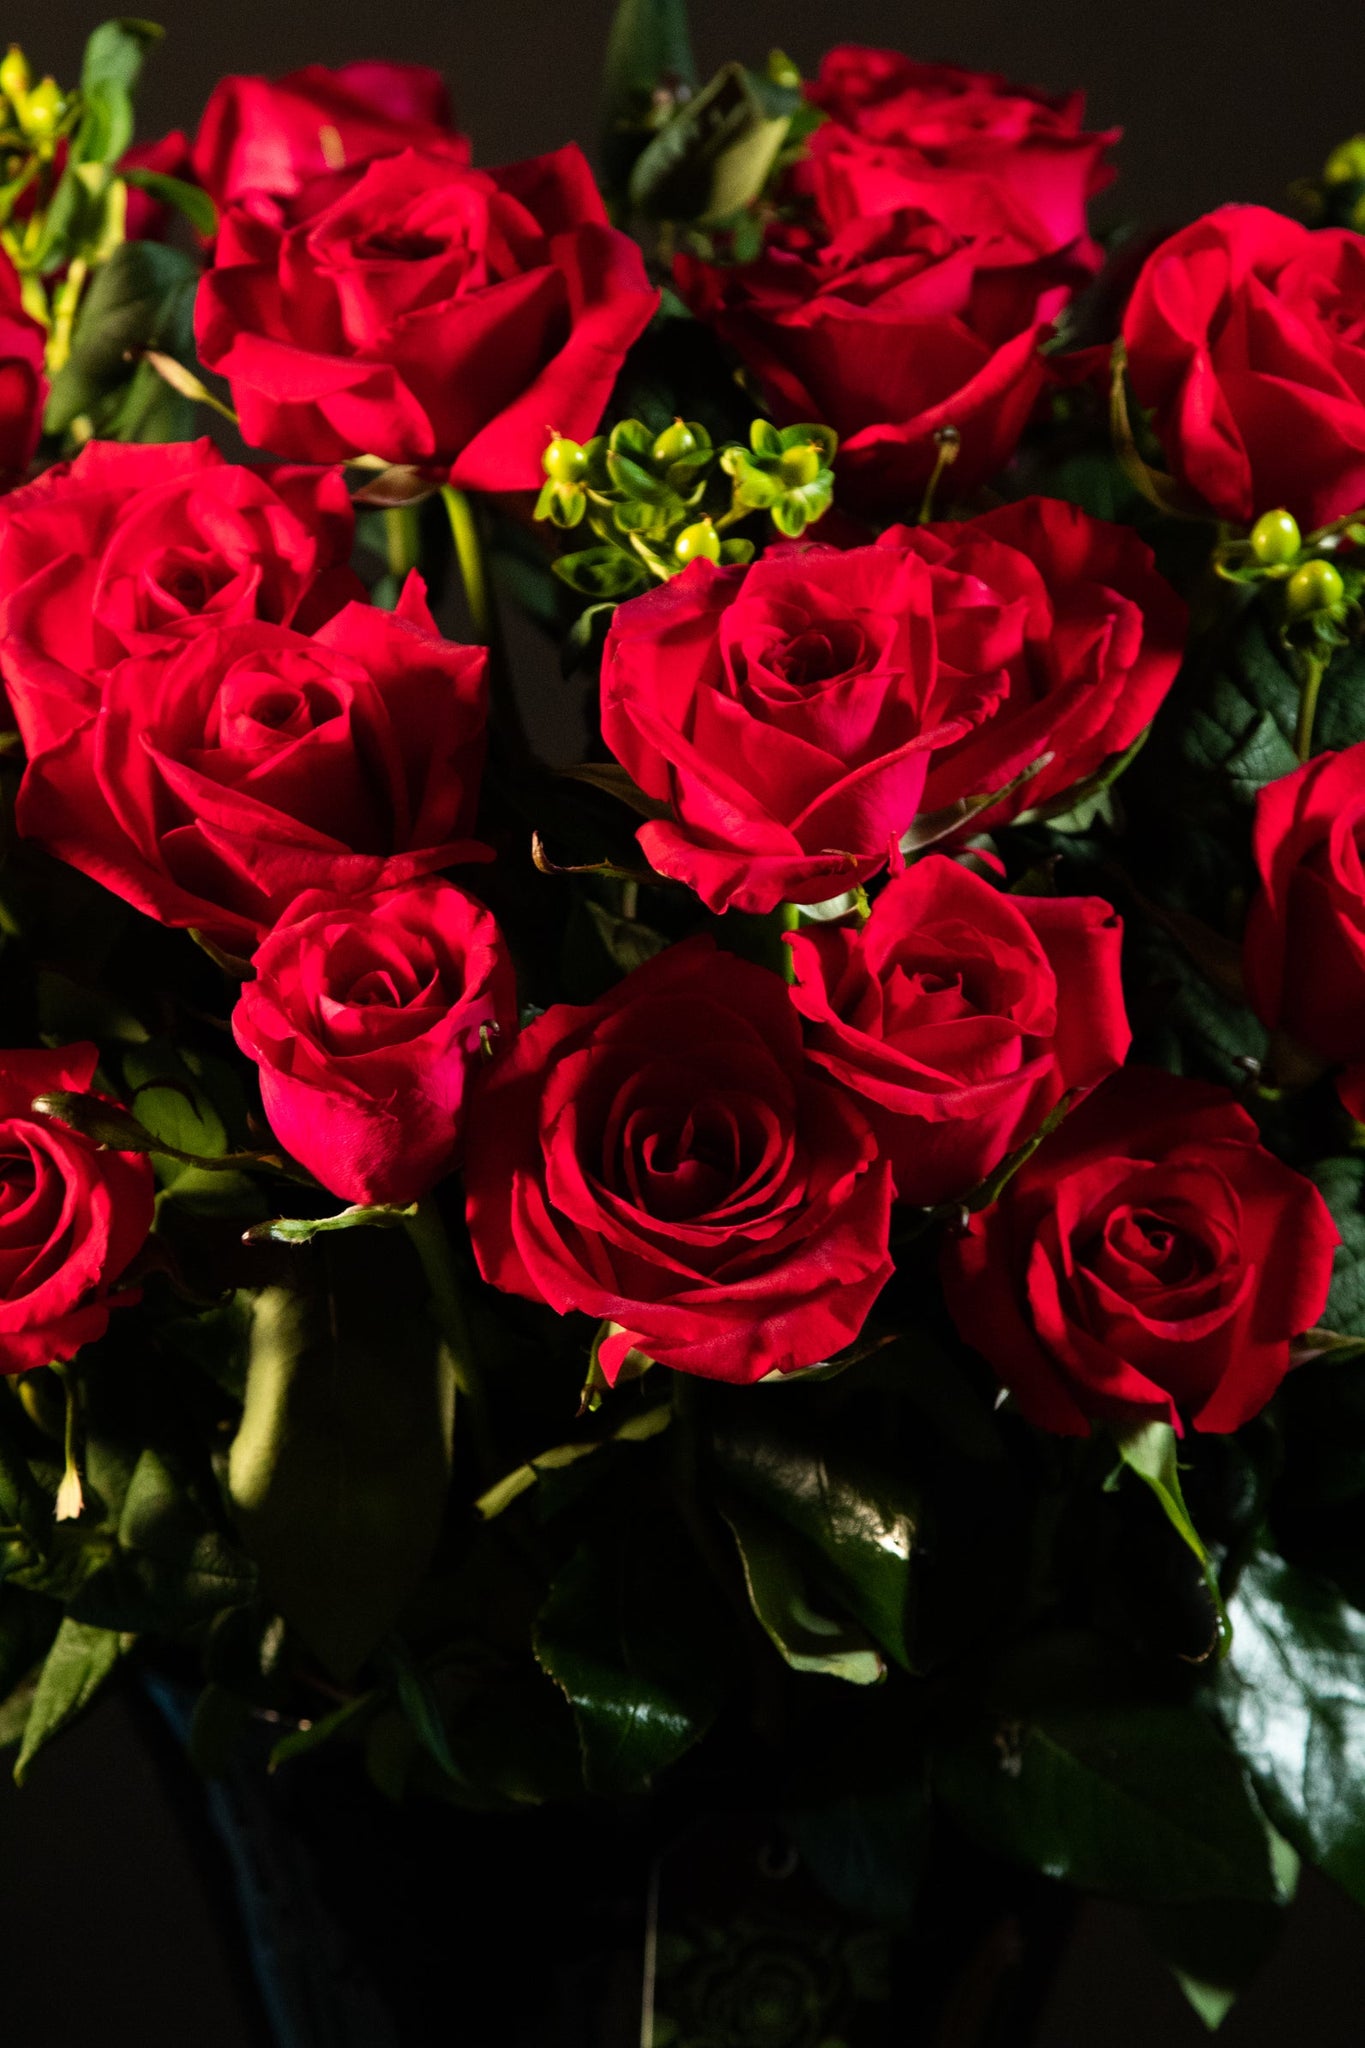 Bouquet 24 rosas